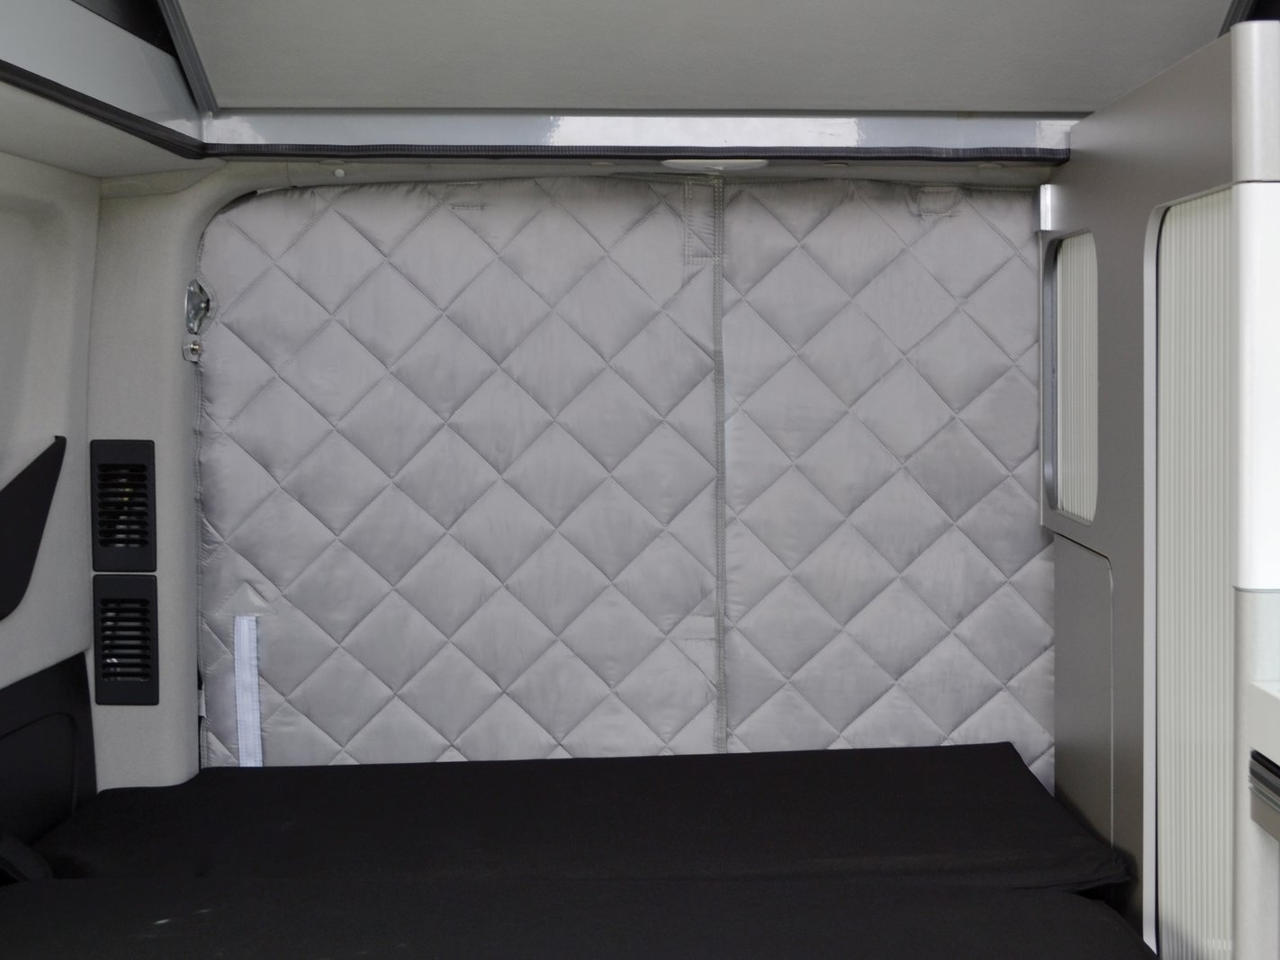 ISOCAMP® rideaux de protection thermique rideau latéral porte